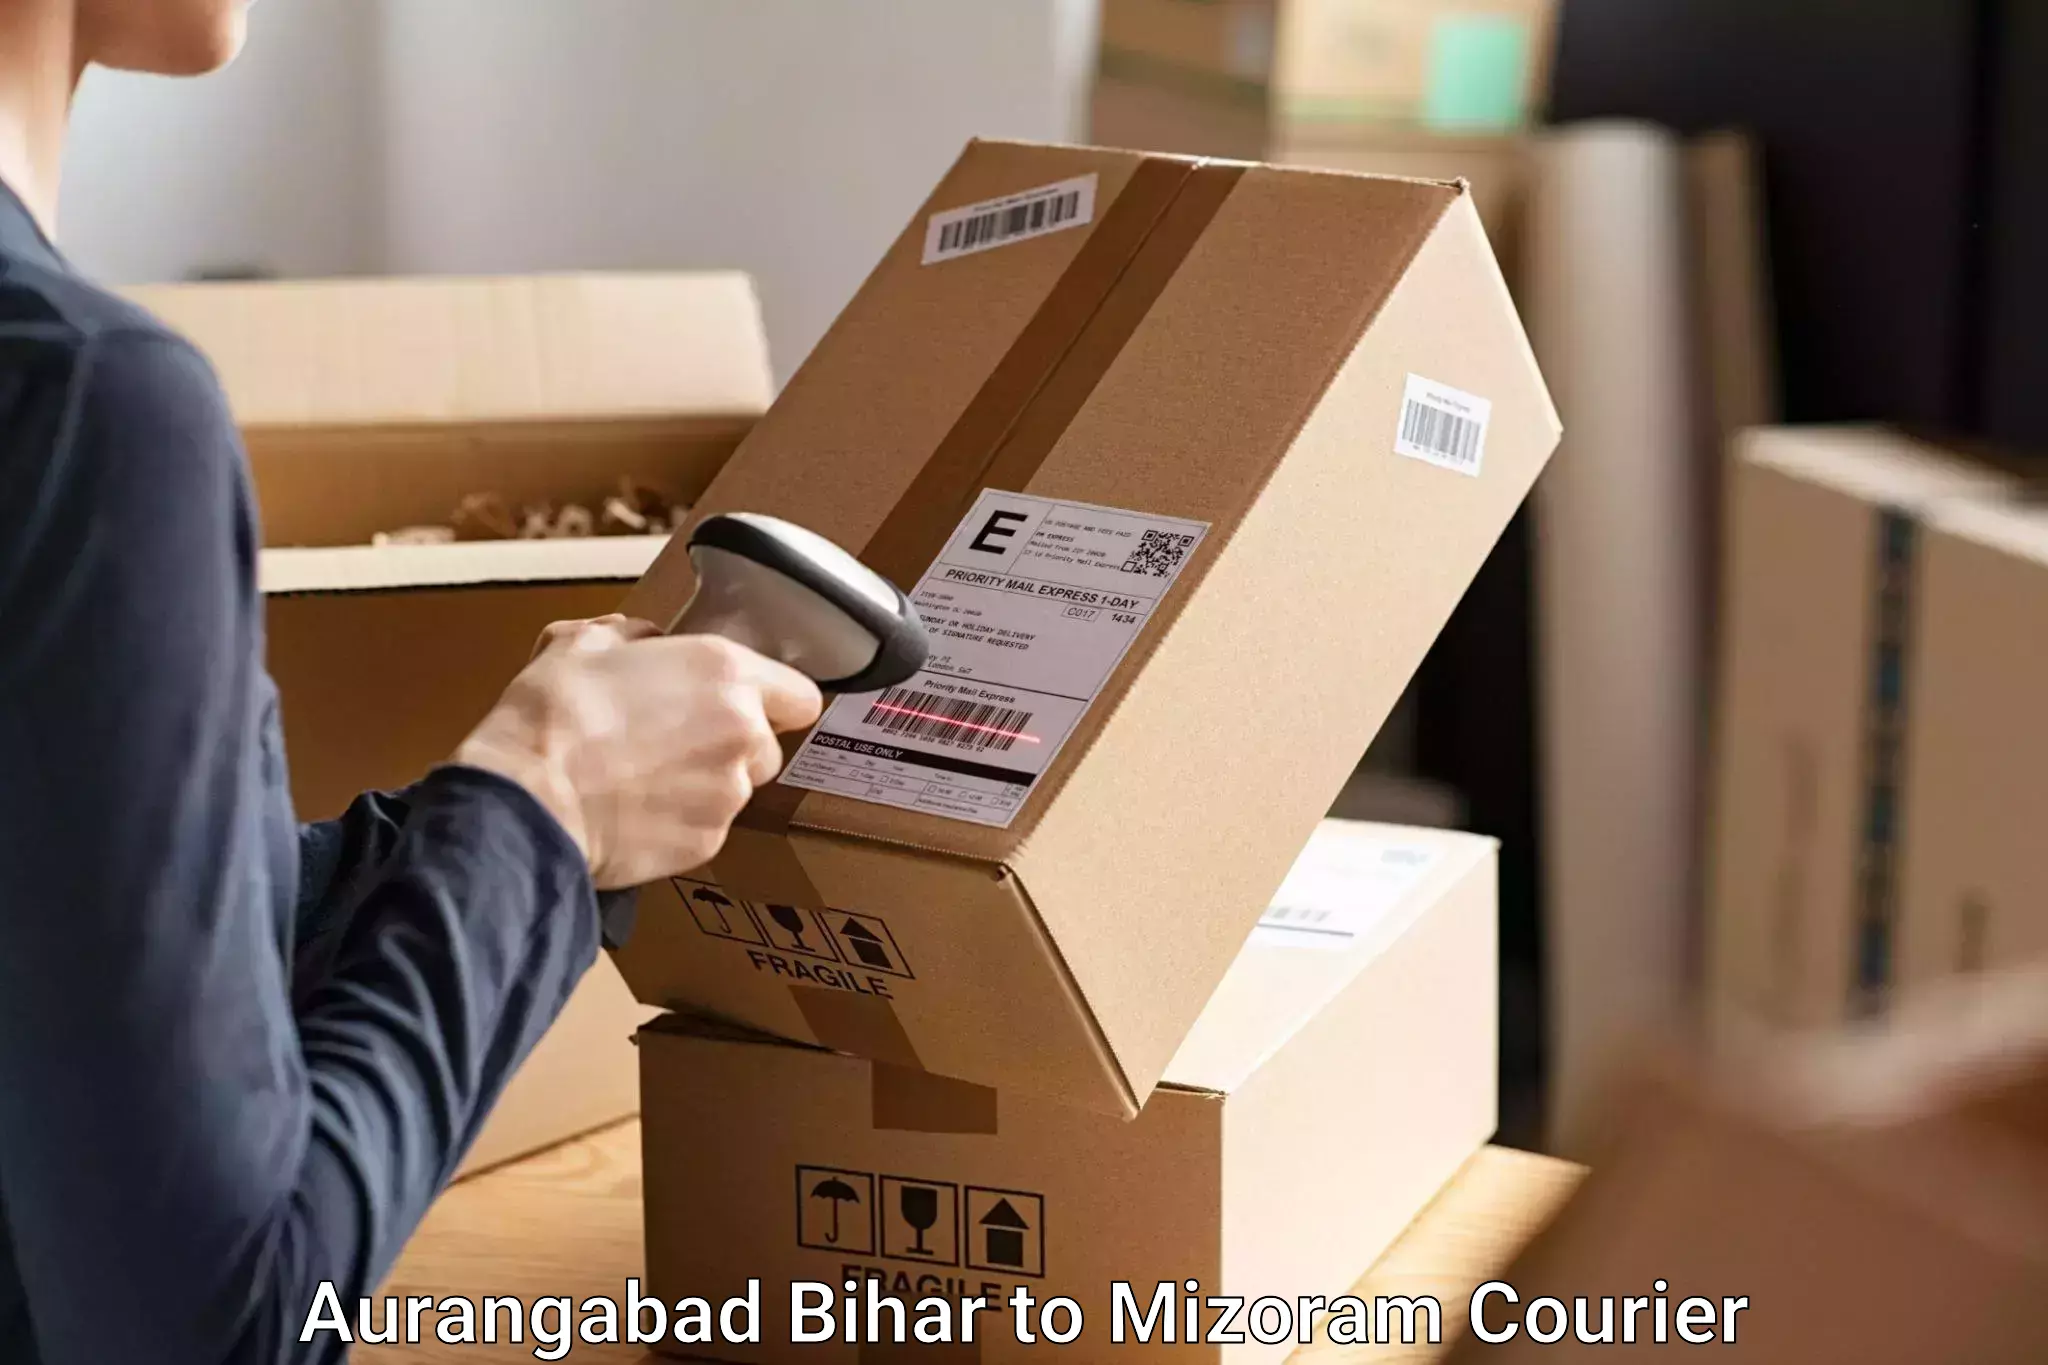 Luggage transit service Aurangabad Bihar to Serchhip